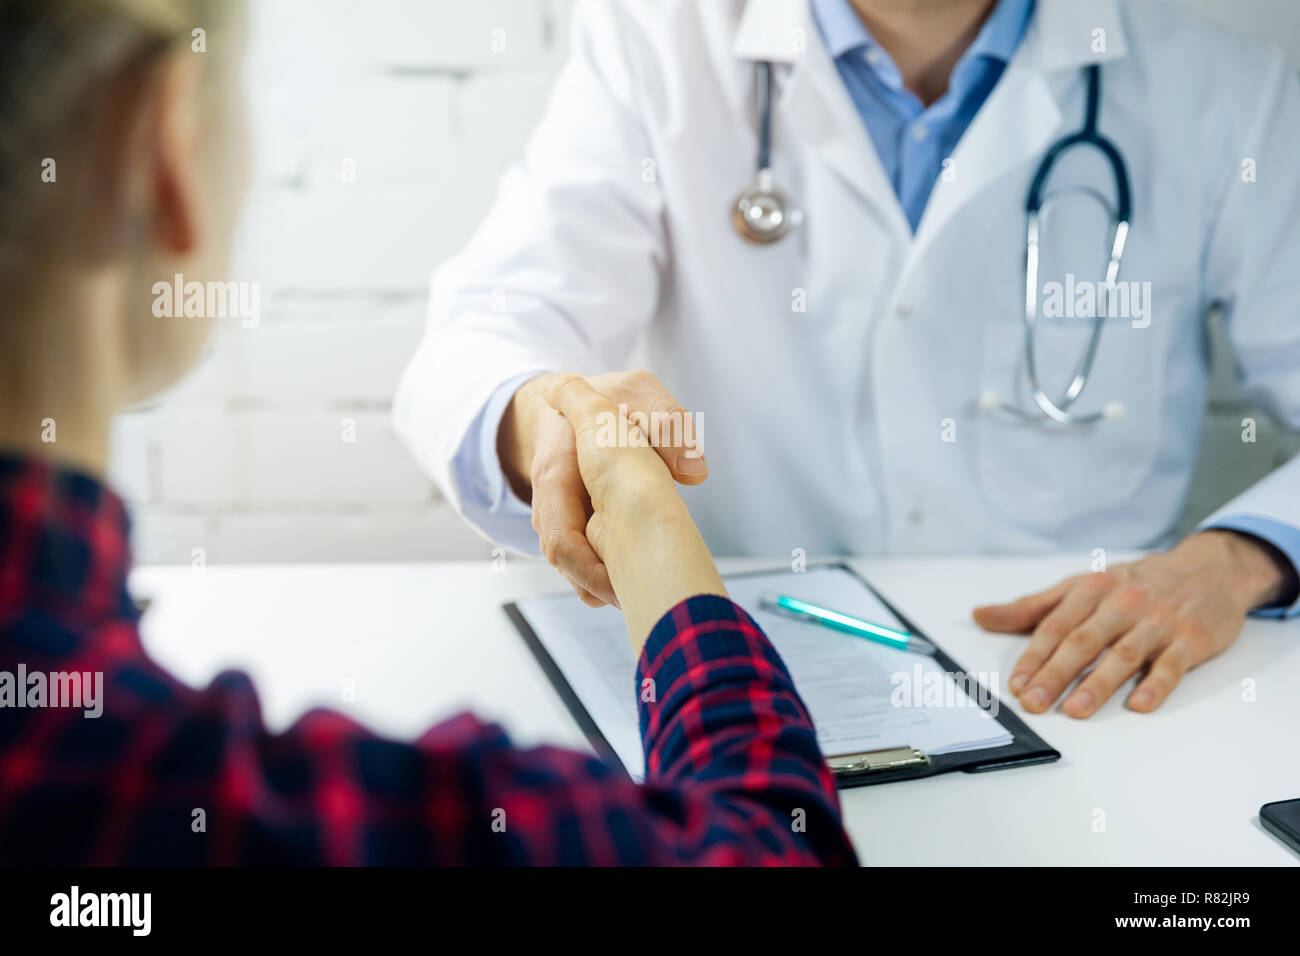 Arzt Besuch - Arzt und Patient Handshake in Kliniken Büro Stockfoto